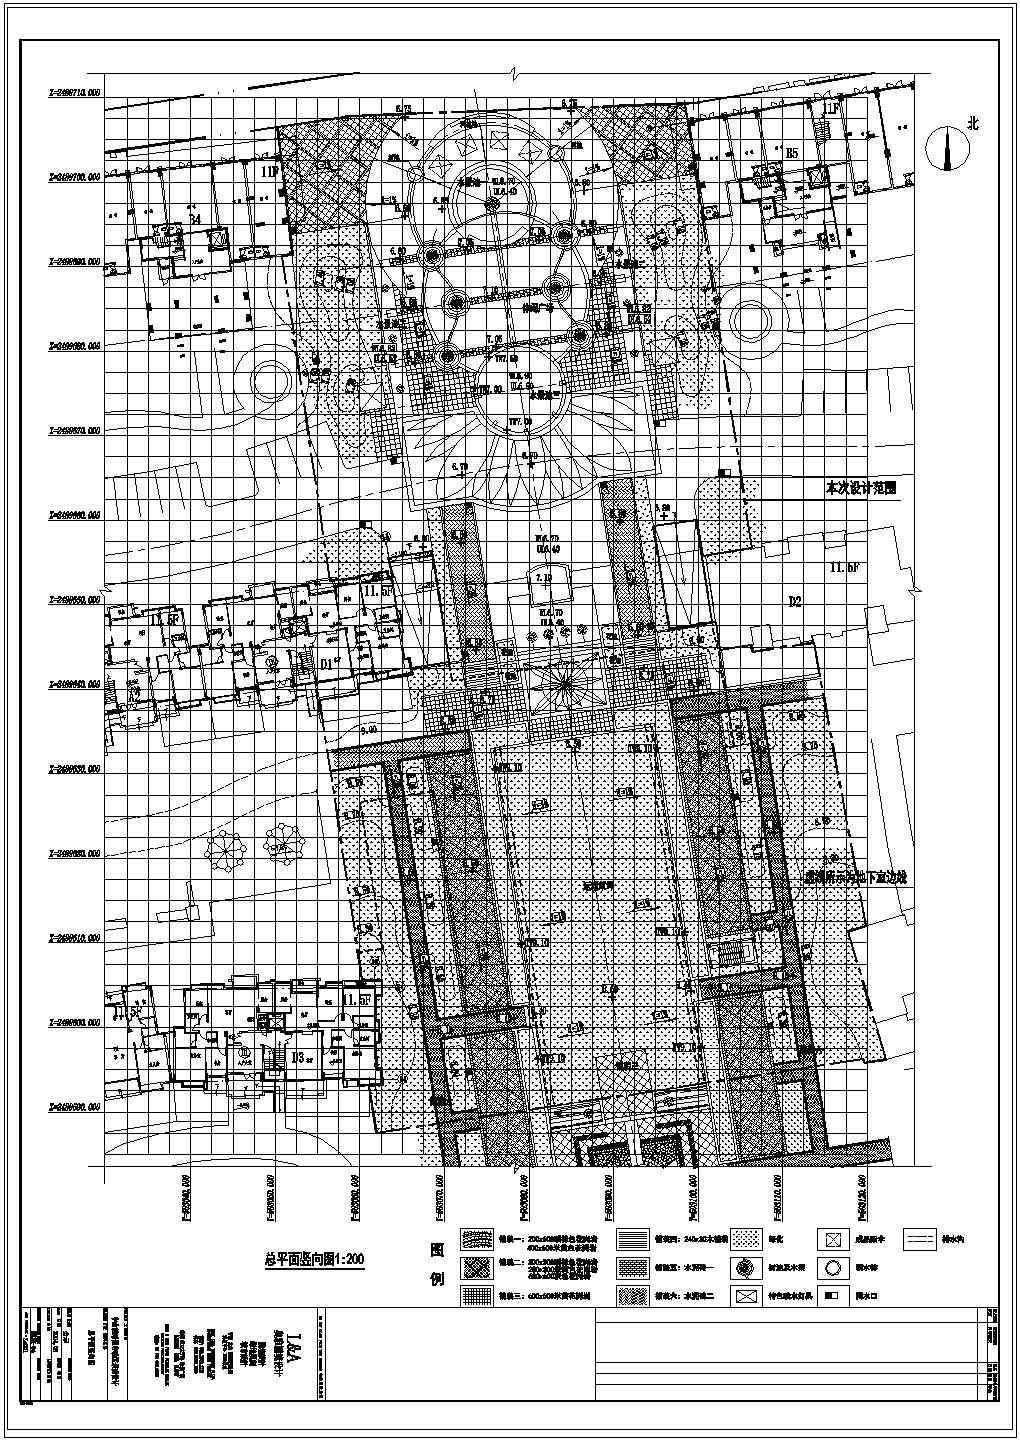 中山市朗晴轩启动区景观设计施工图-总平面竖向